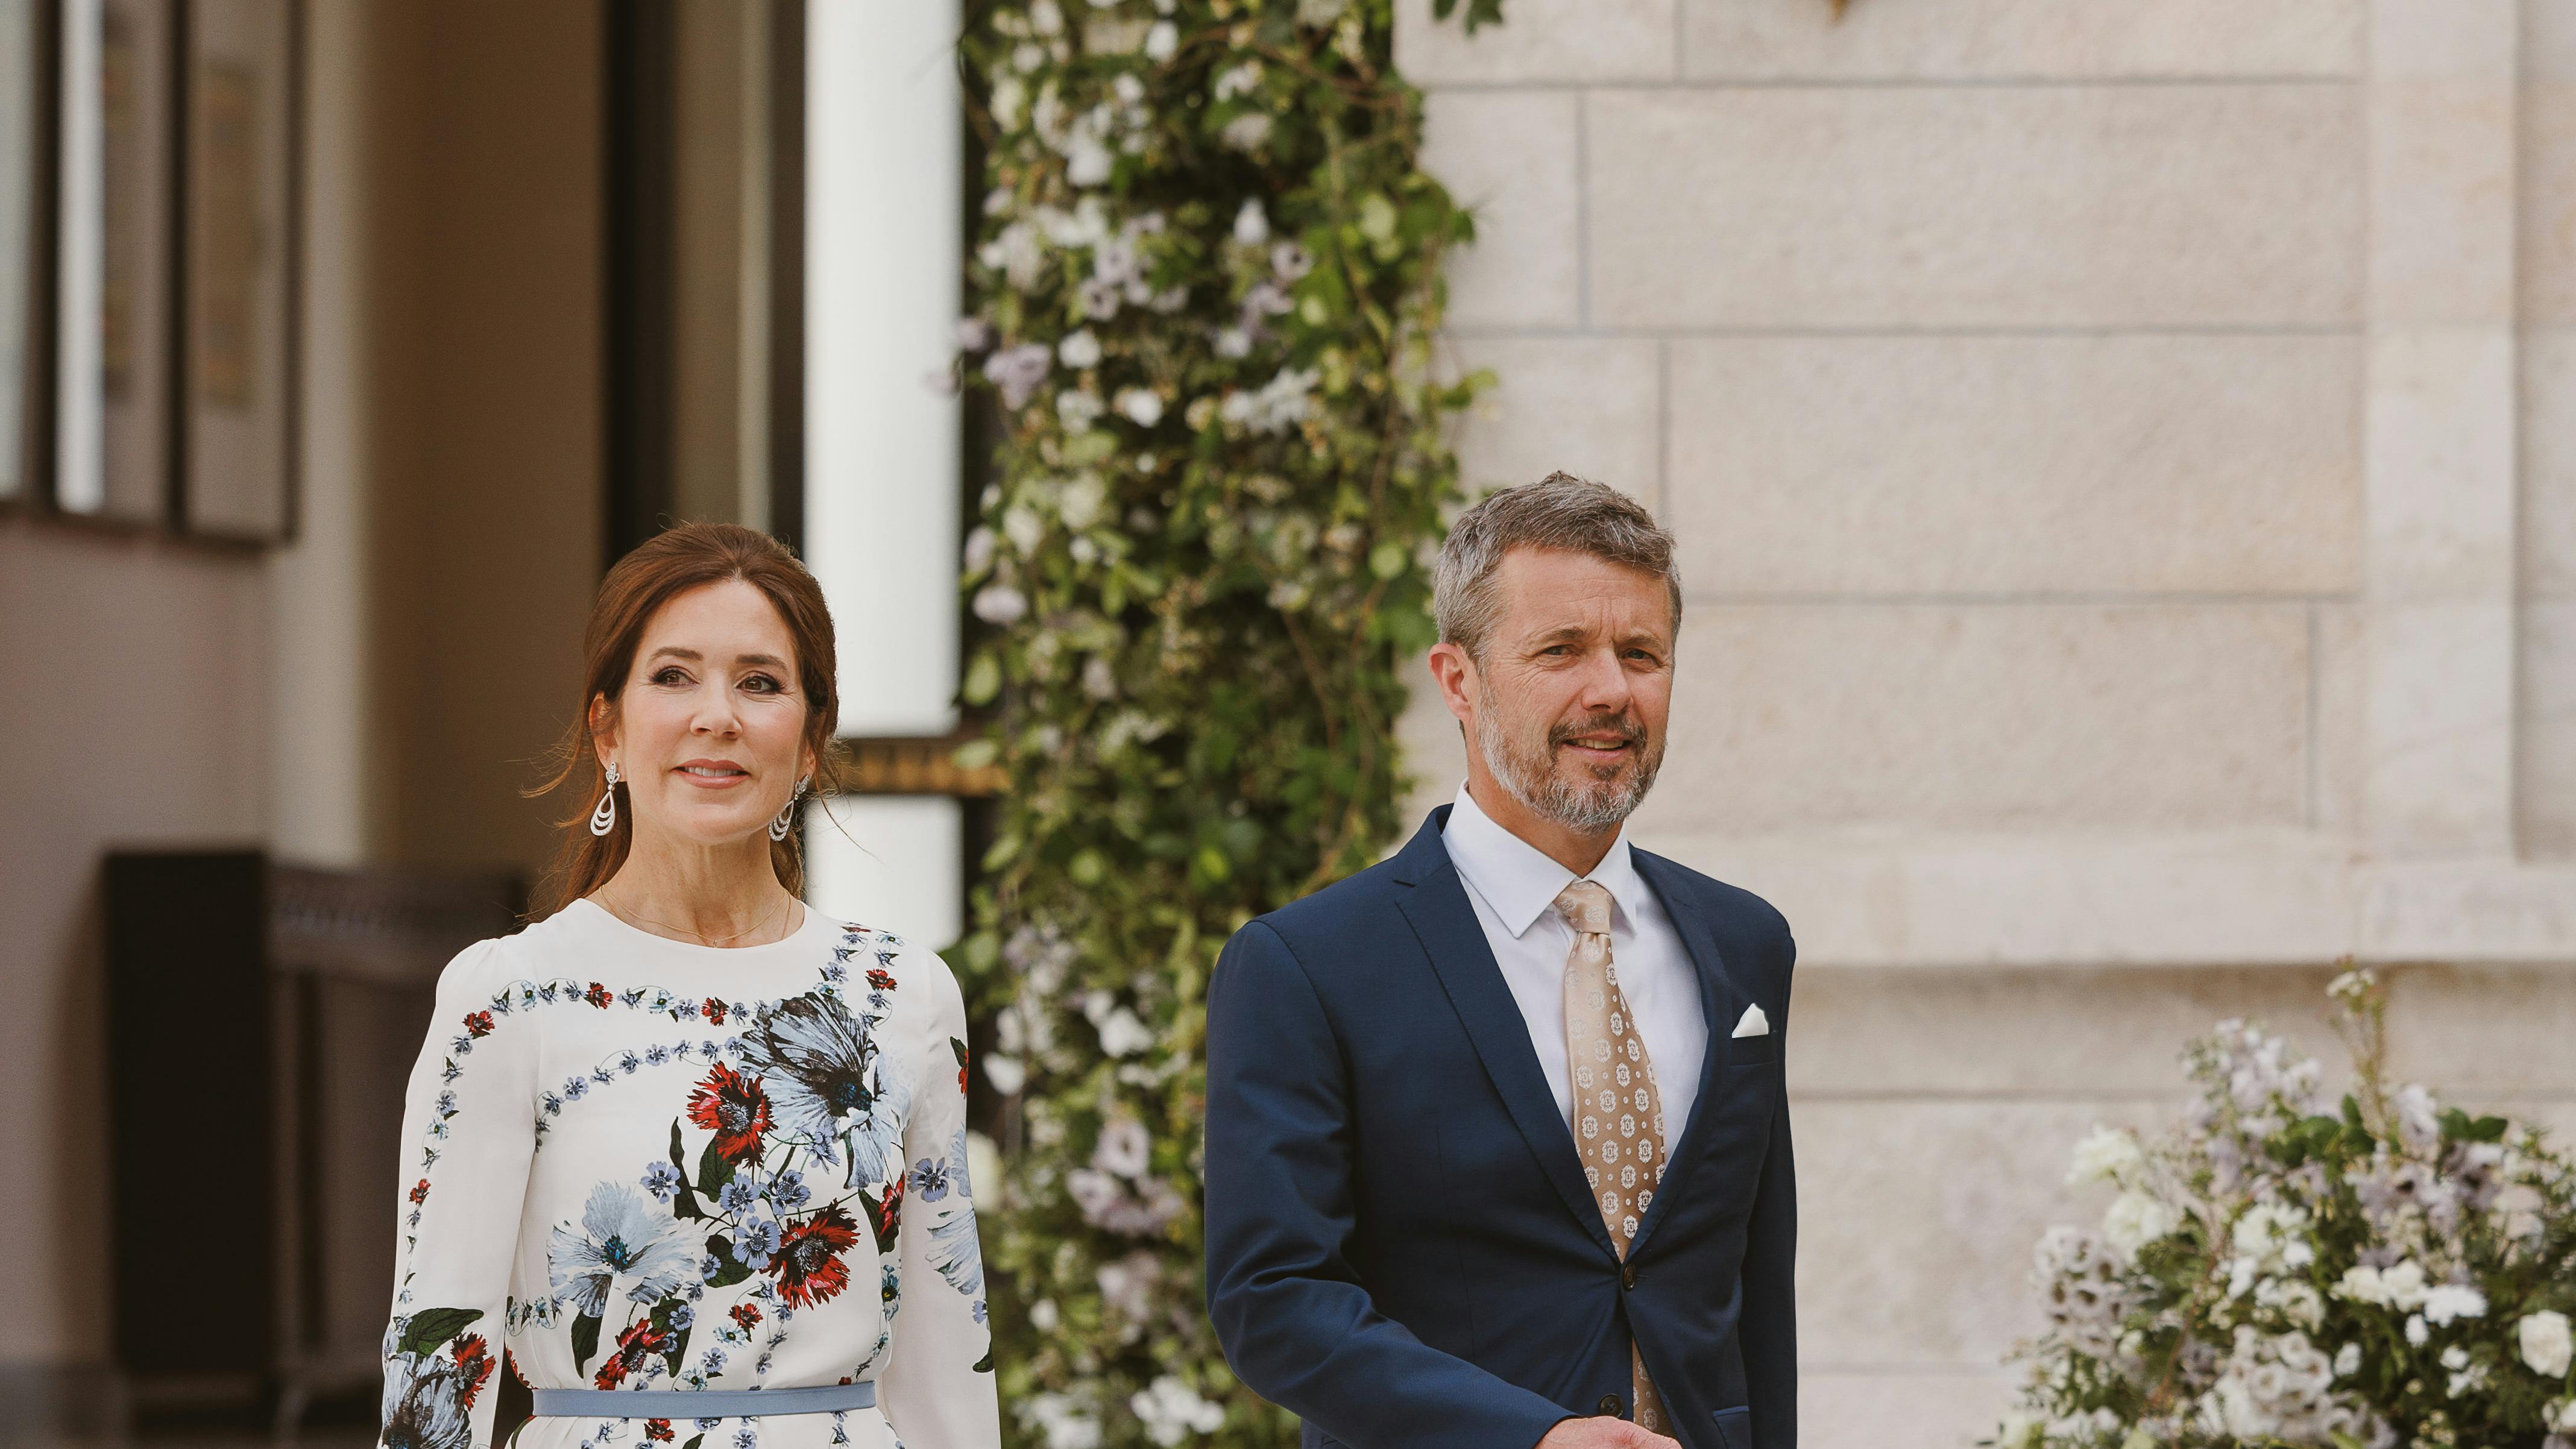 Danmarks kronprinsesse Mary og kronprins Frederik.&nbsp;
